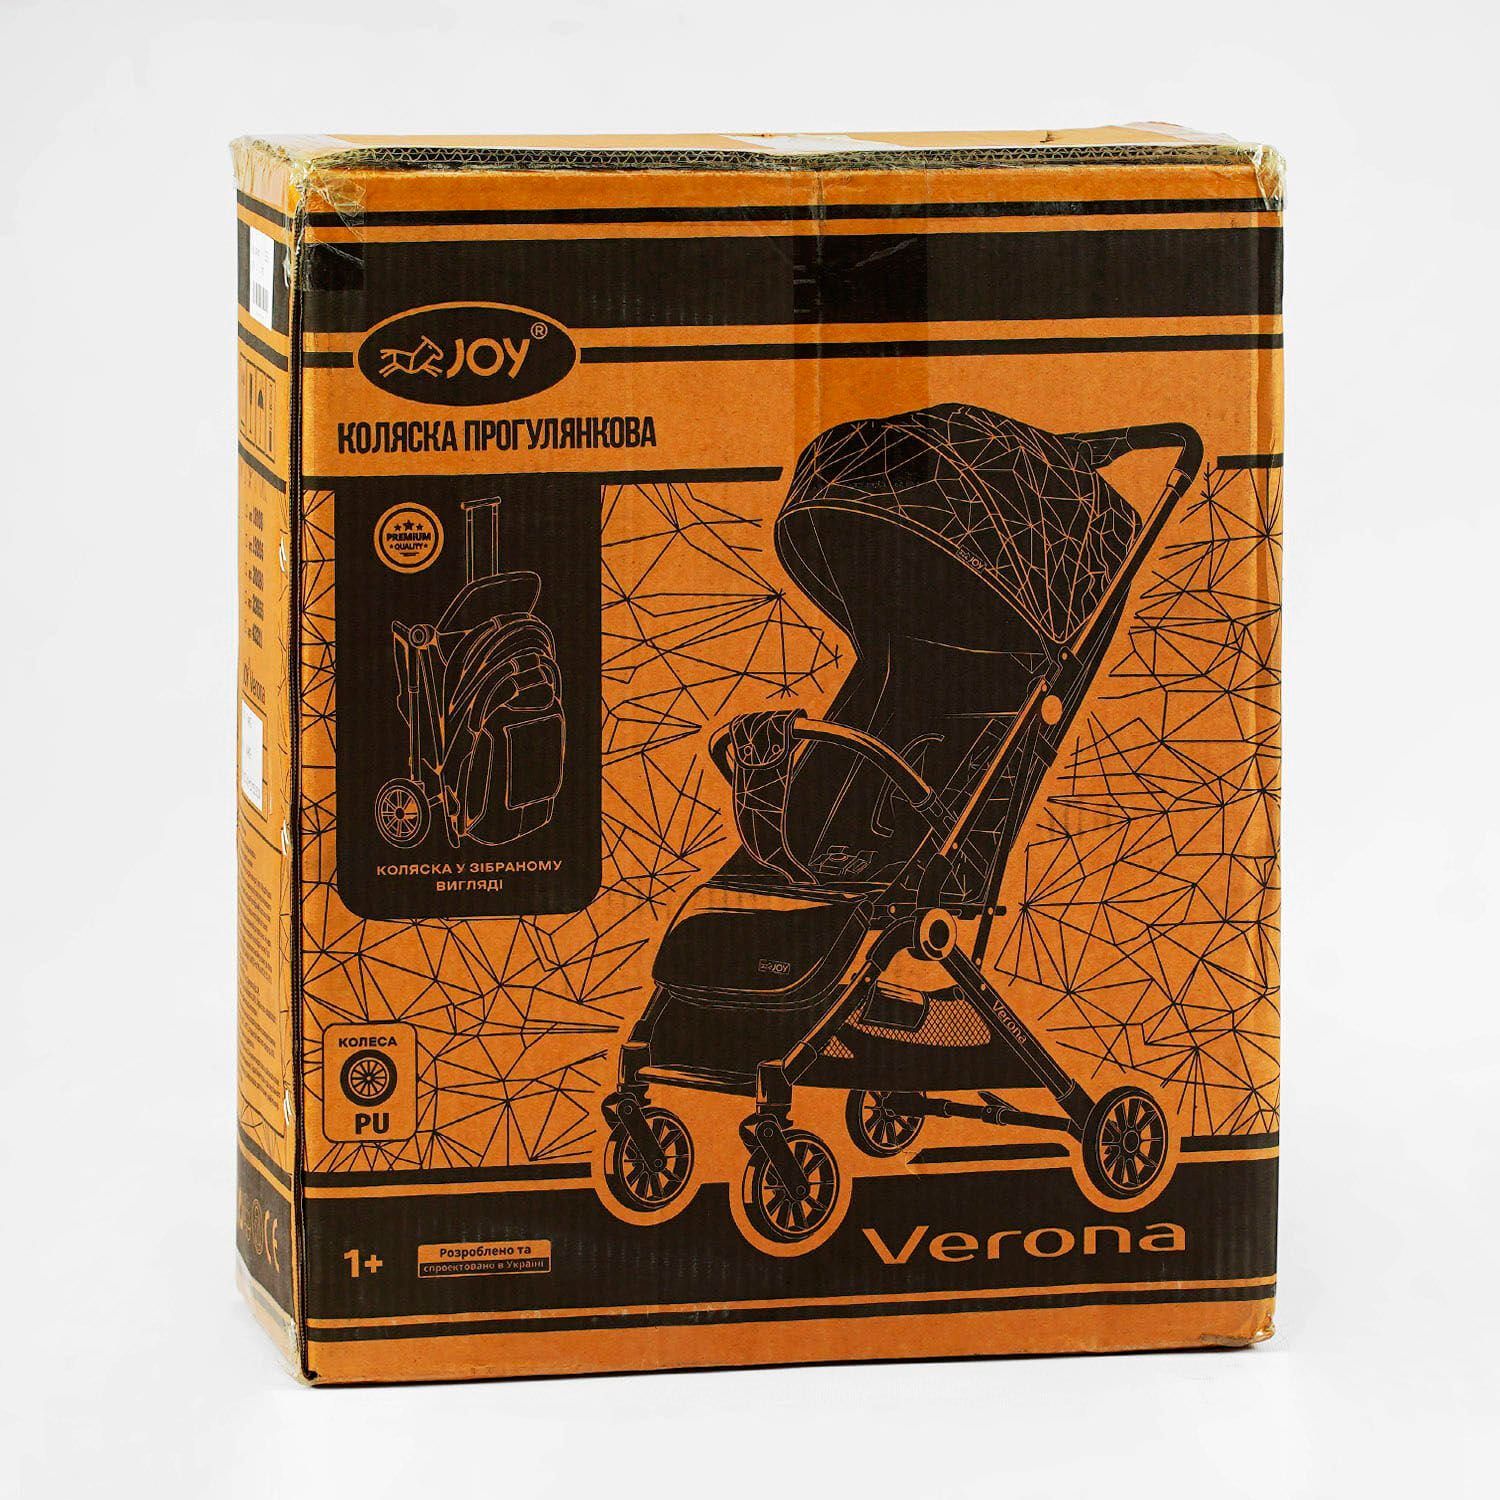 Коляска прогулочная детская "JOY" Verona (43211) рама стальная, футкавер, подстаканник, телескопическая ручка